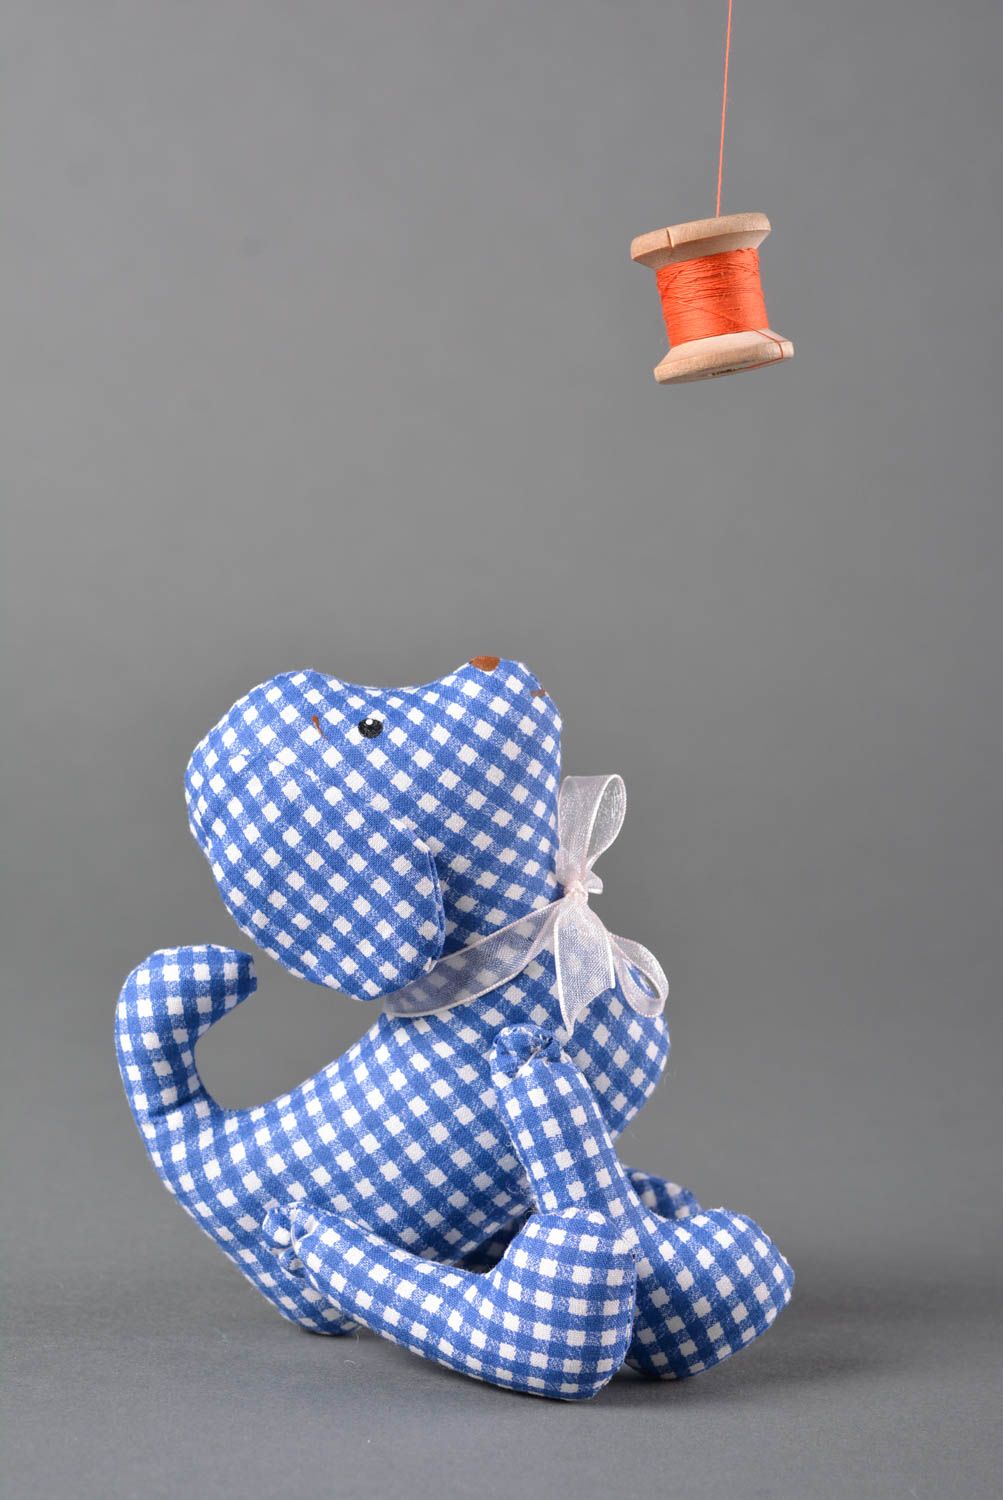 Игрушка собачка ручной работы детская игрушка расписанная акрилом мягкая игрушка фото 2